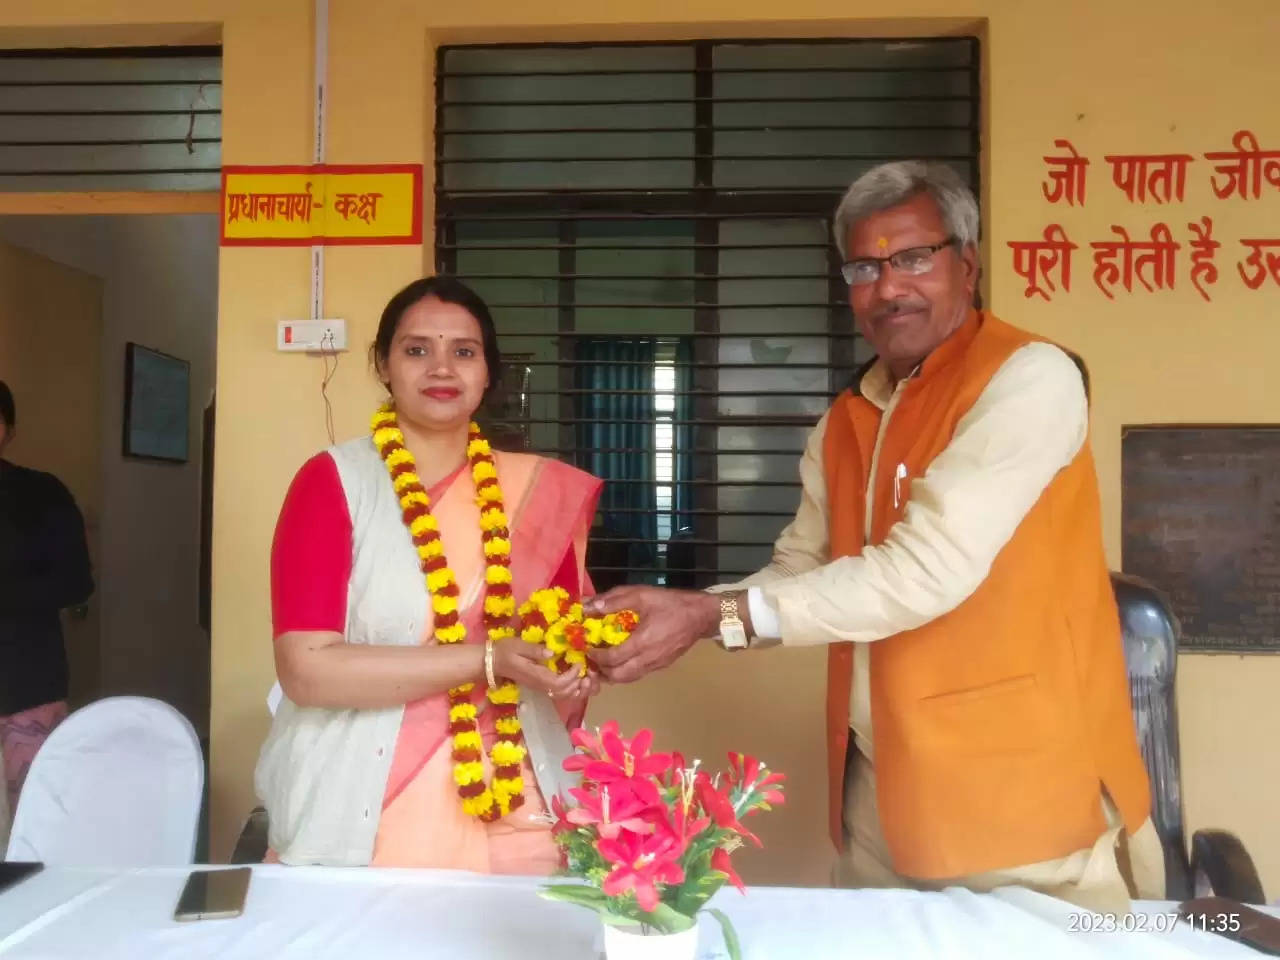 Varanasi News: कन्या उच्चतर माध्यमिक विद्यालय चौबेपुर में विदाई समारोह संपन्न